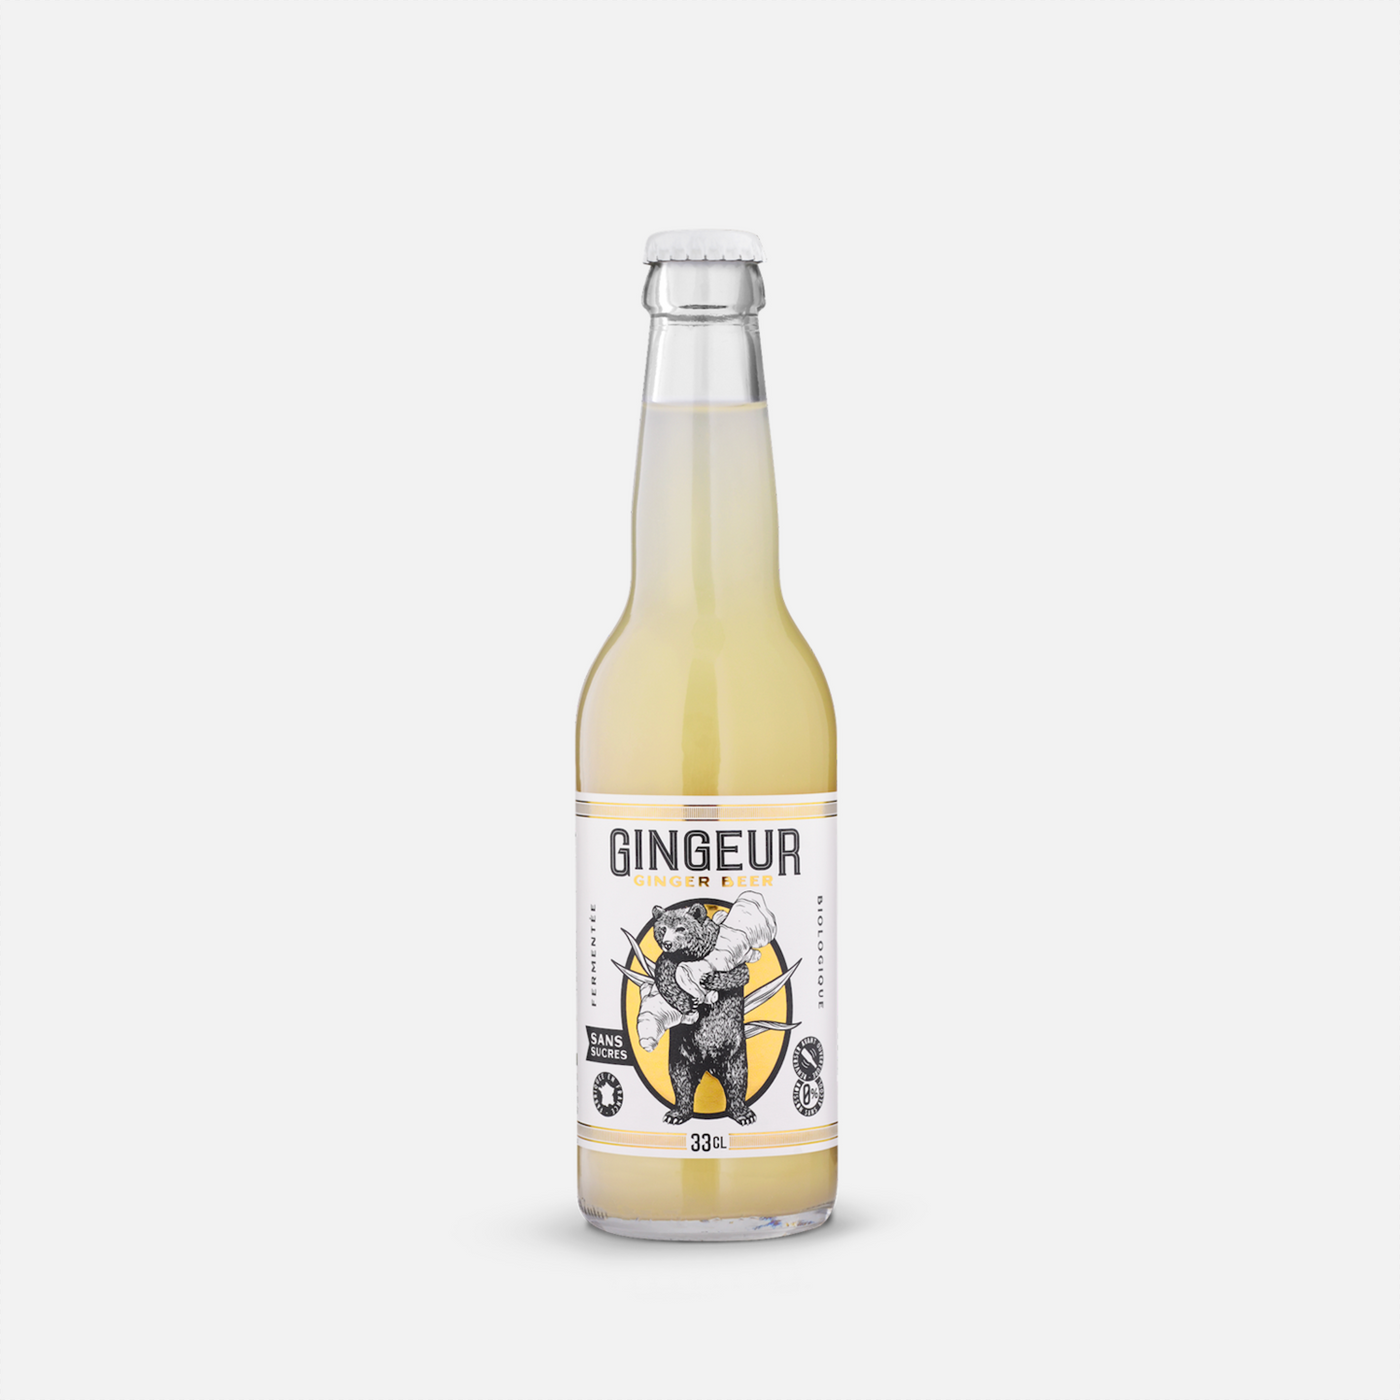 GINGEUR Ginger Beer Sans Sucres - Biologique & Naturellement Fermenté - Bouteille 12x33cl - Retrait Pick-up Anglet uniquement